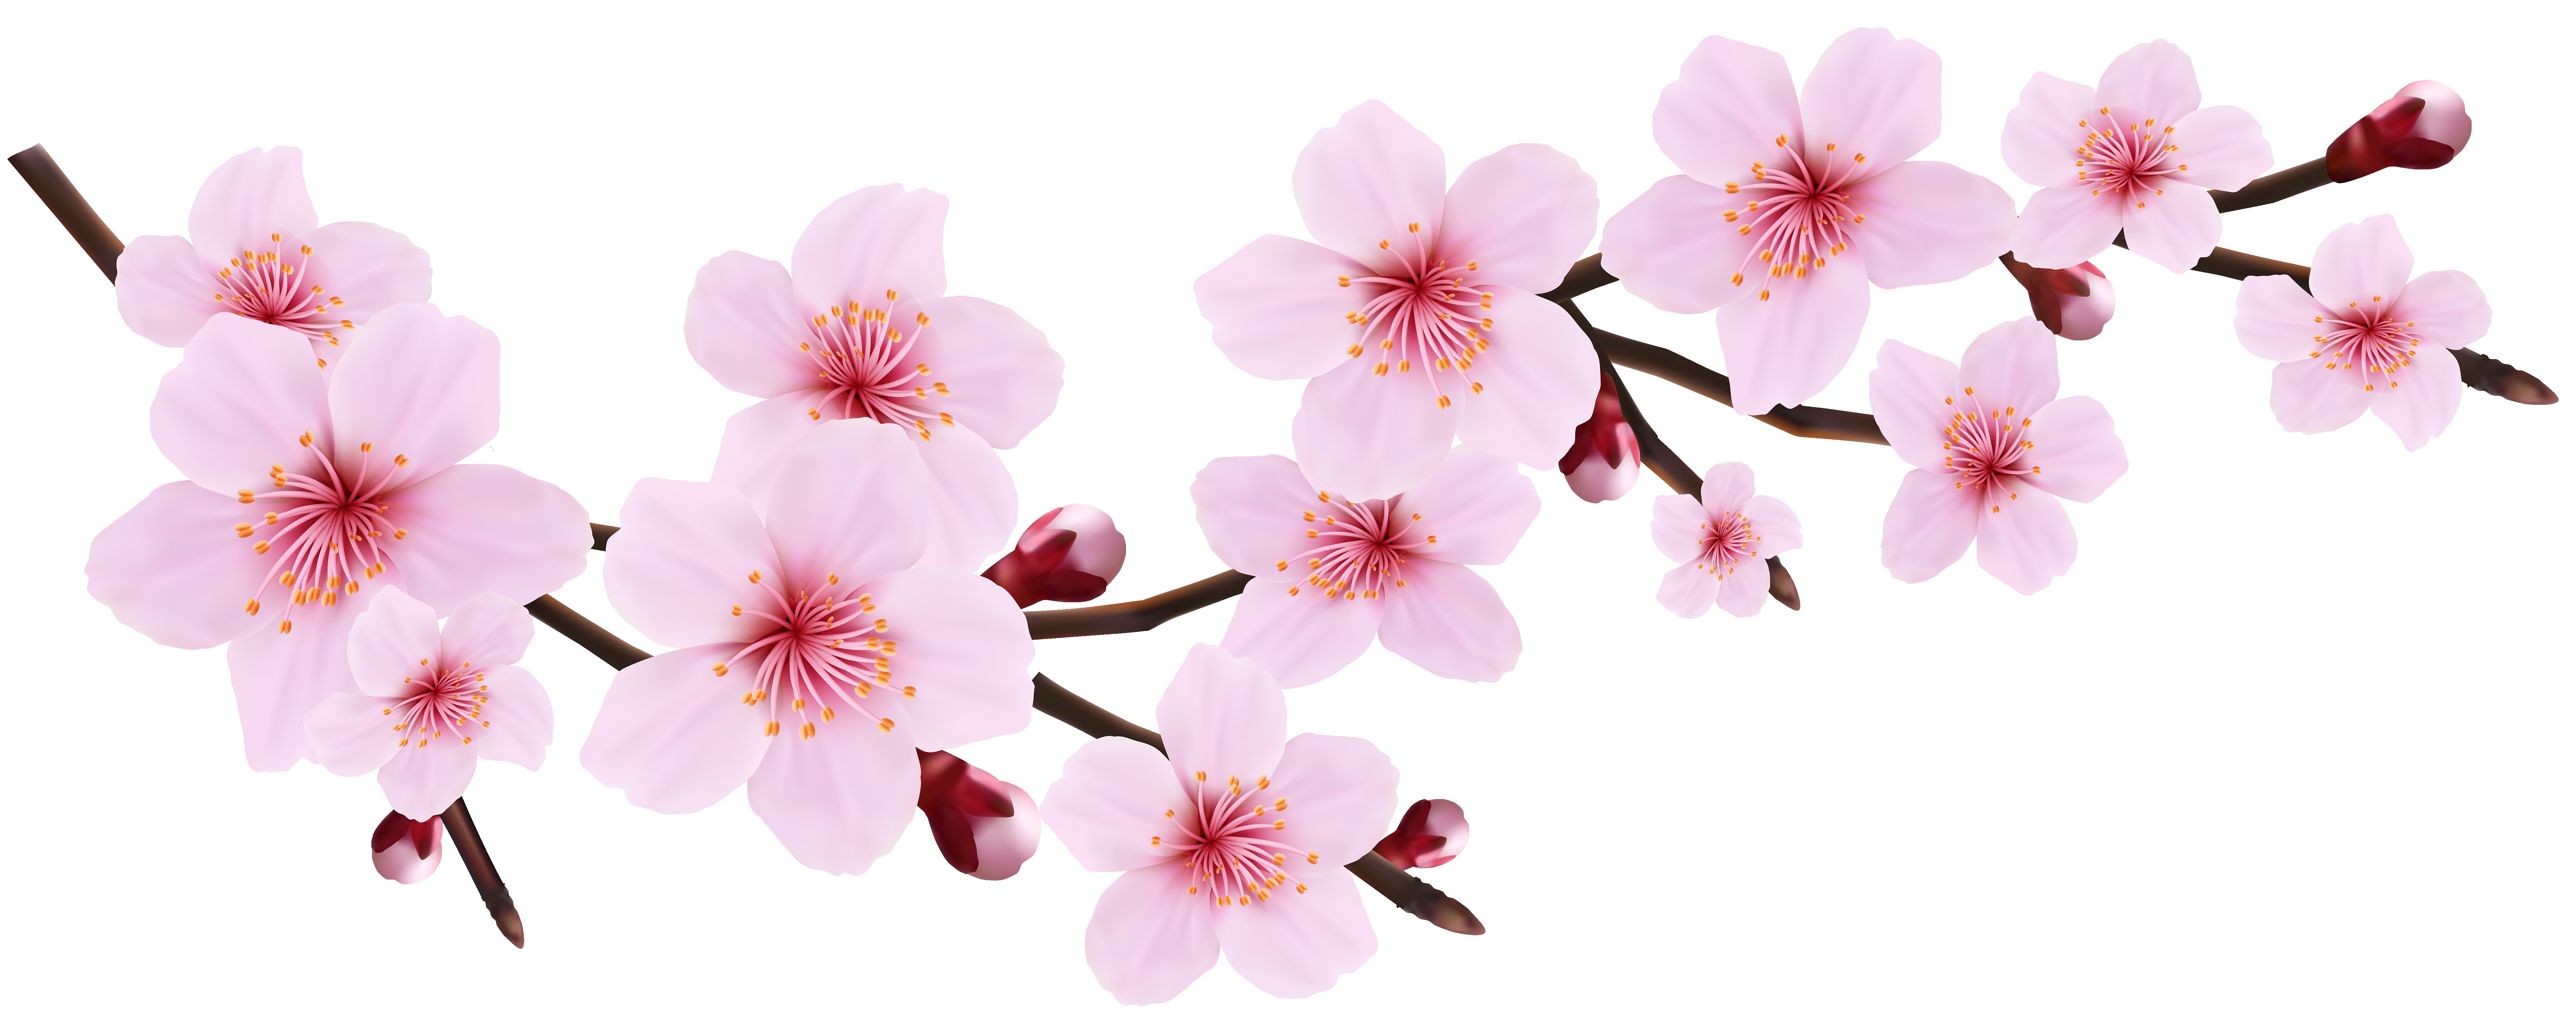 blossom flower clip art